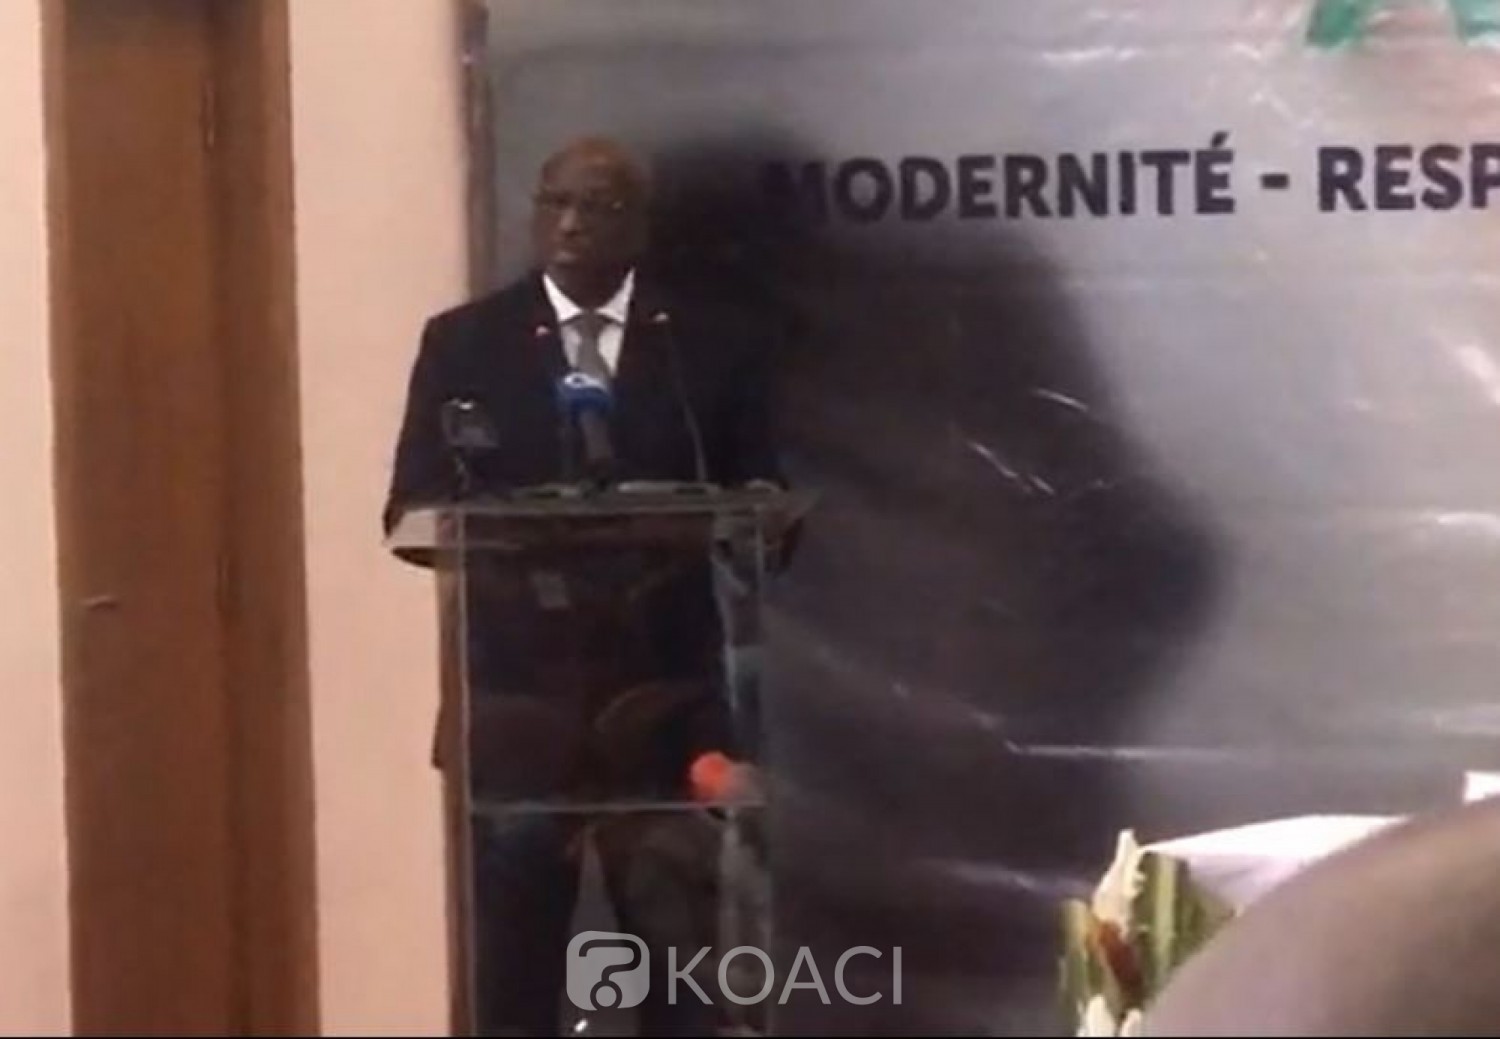 Côte d'Ivoire : CAF, Anouma présente officiellement  sa candidature  et affirme : « J'ai un projet de développement innovant »